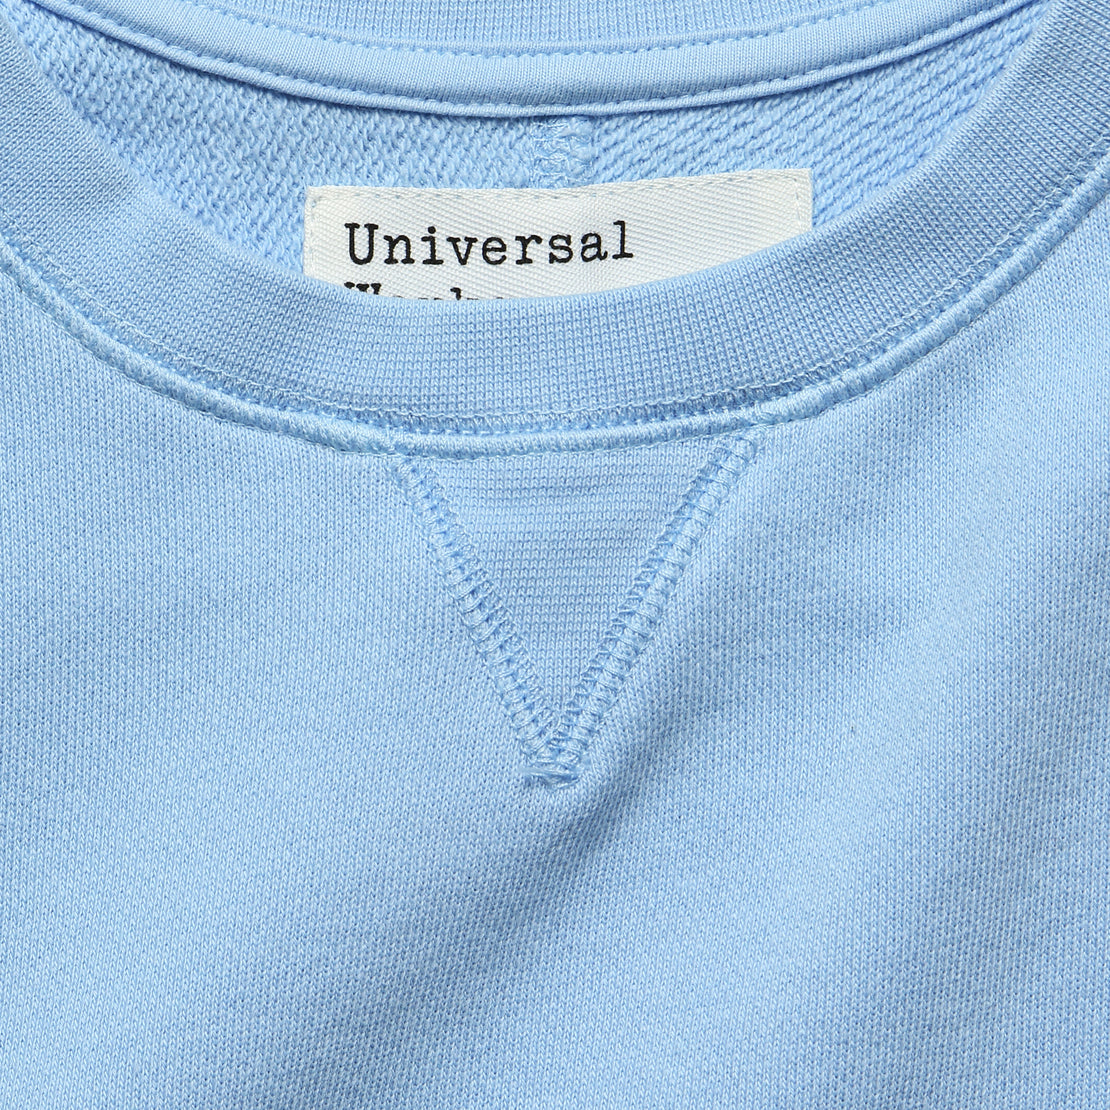 Crew Fleece Sweatshirt - Sky Blue - Universal Works - STAG Provisions - Tops - Fleece / Sweatshirt